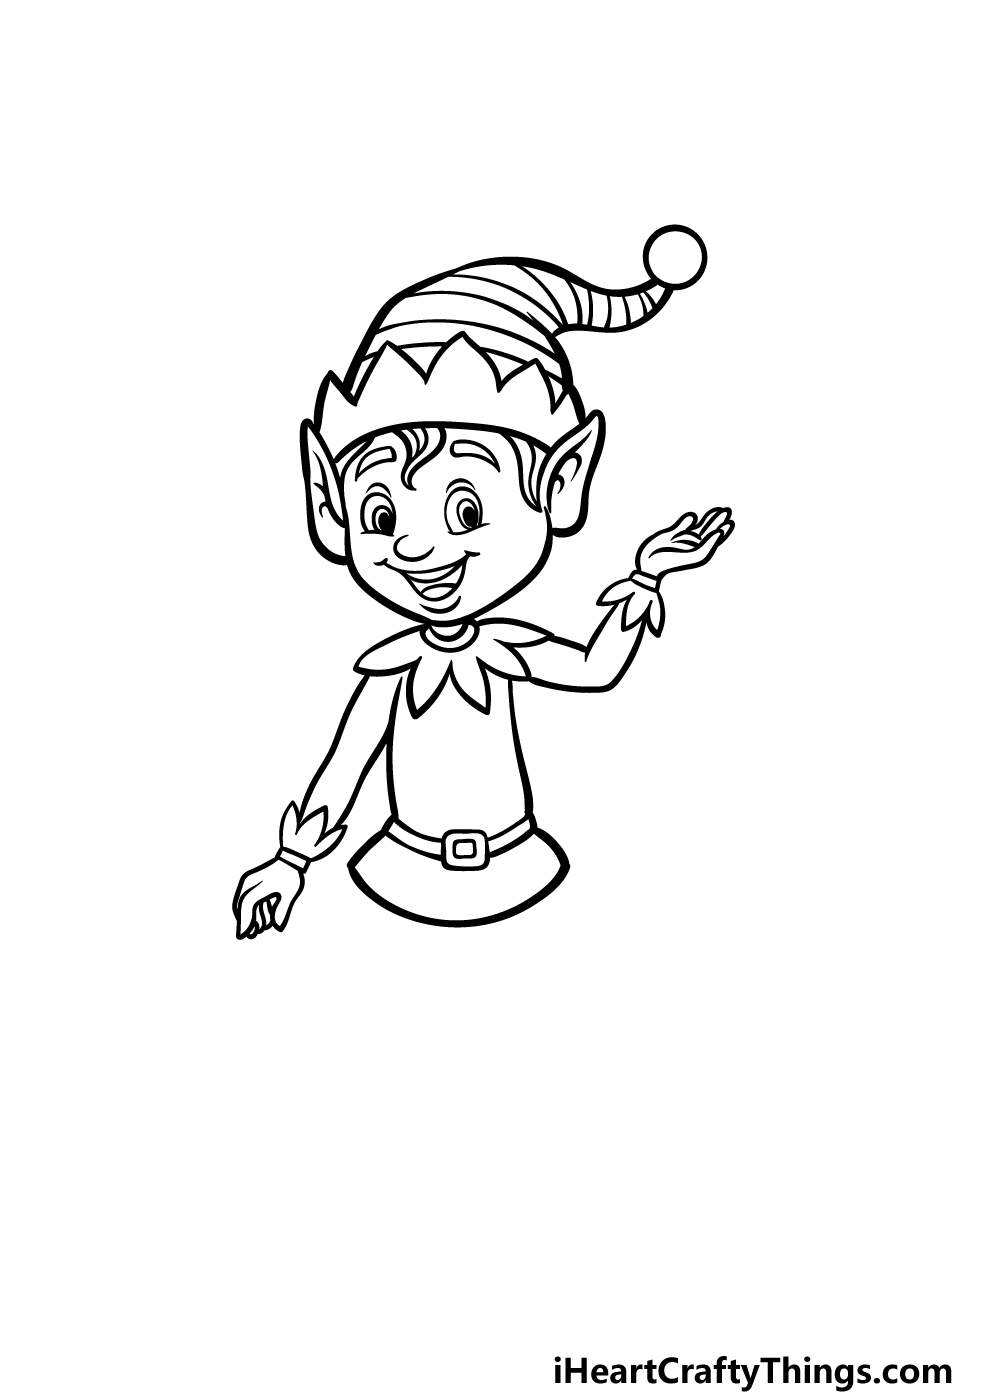 how to draw a cartoon elf step 5